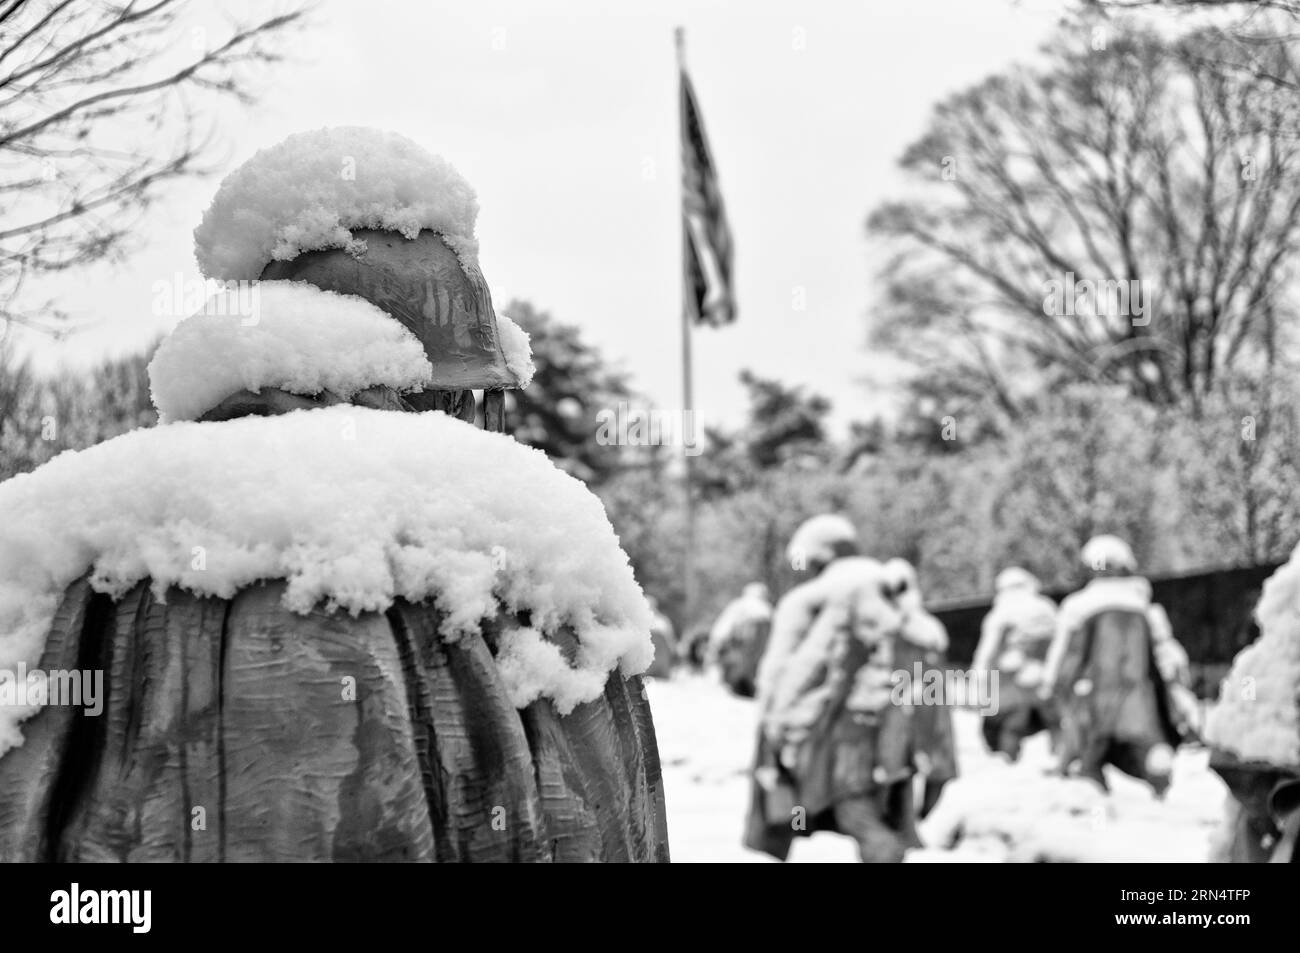 WASHINGTON, DC - Nieve recién caída en las esculturas de soldadura del Korean War Veterans Memorial en Washington DC. El Memorial de la Guerra de Corea en el Nat Foto de stock